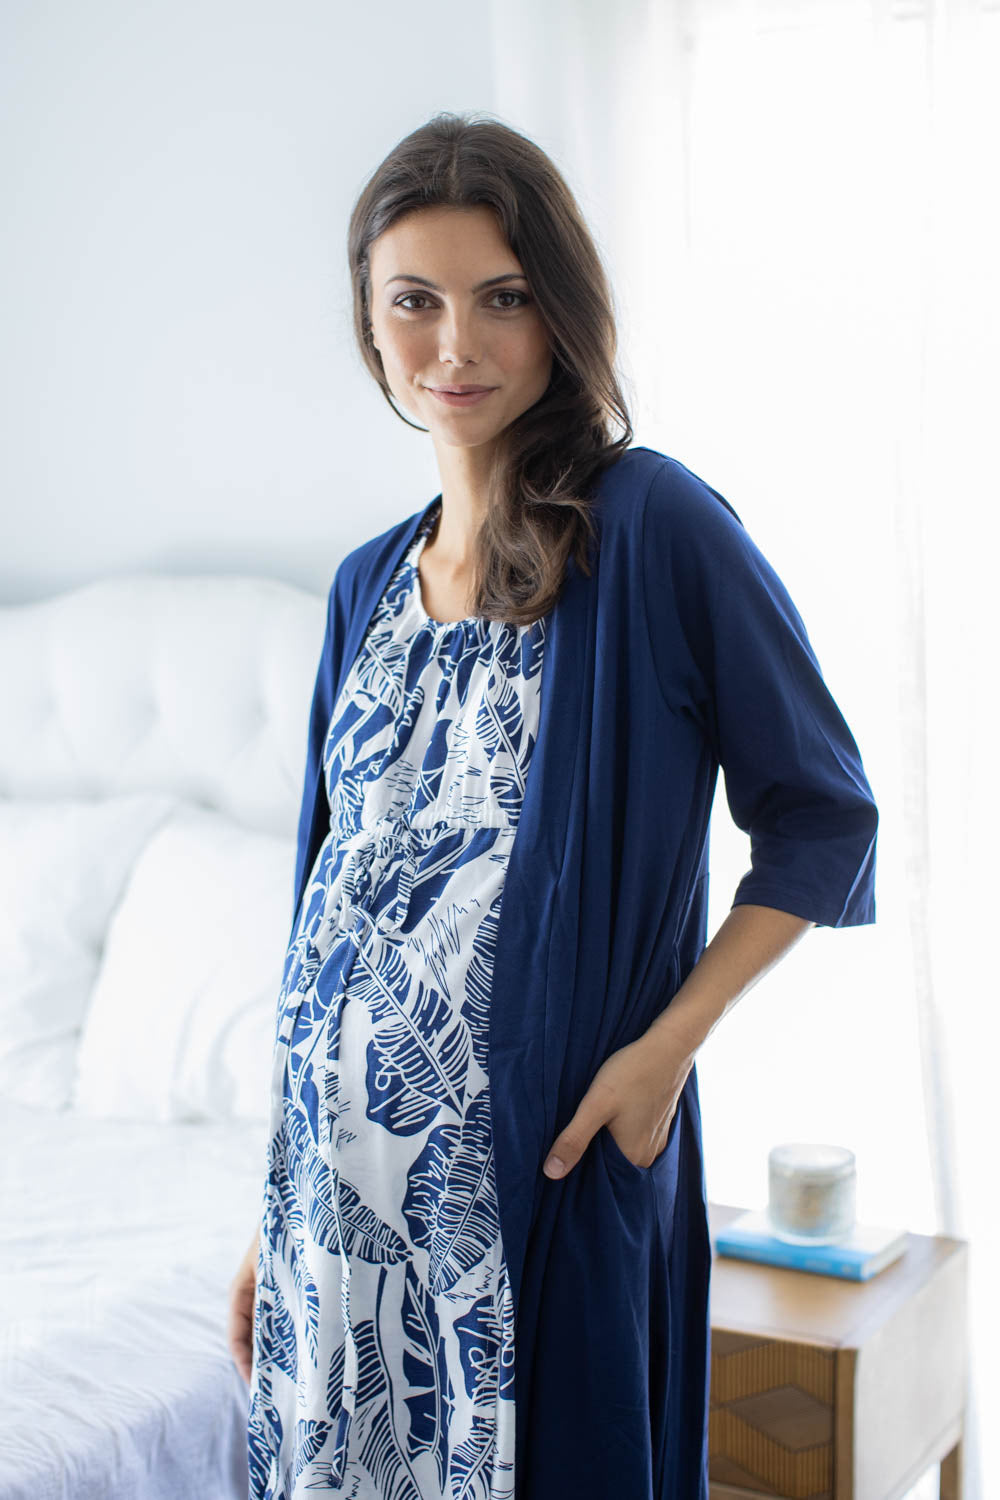 Serra 3 in 1 Labor Gown & Navy Blue Pregnancy/Postpartum Robe Set ...